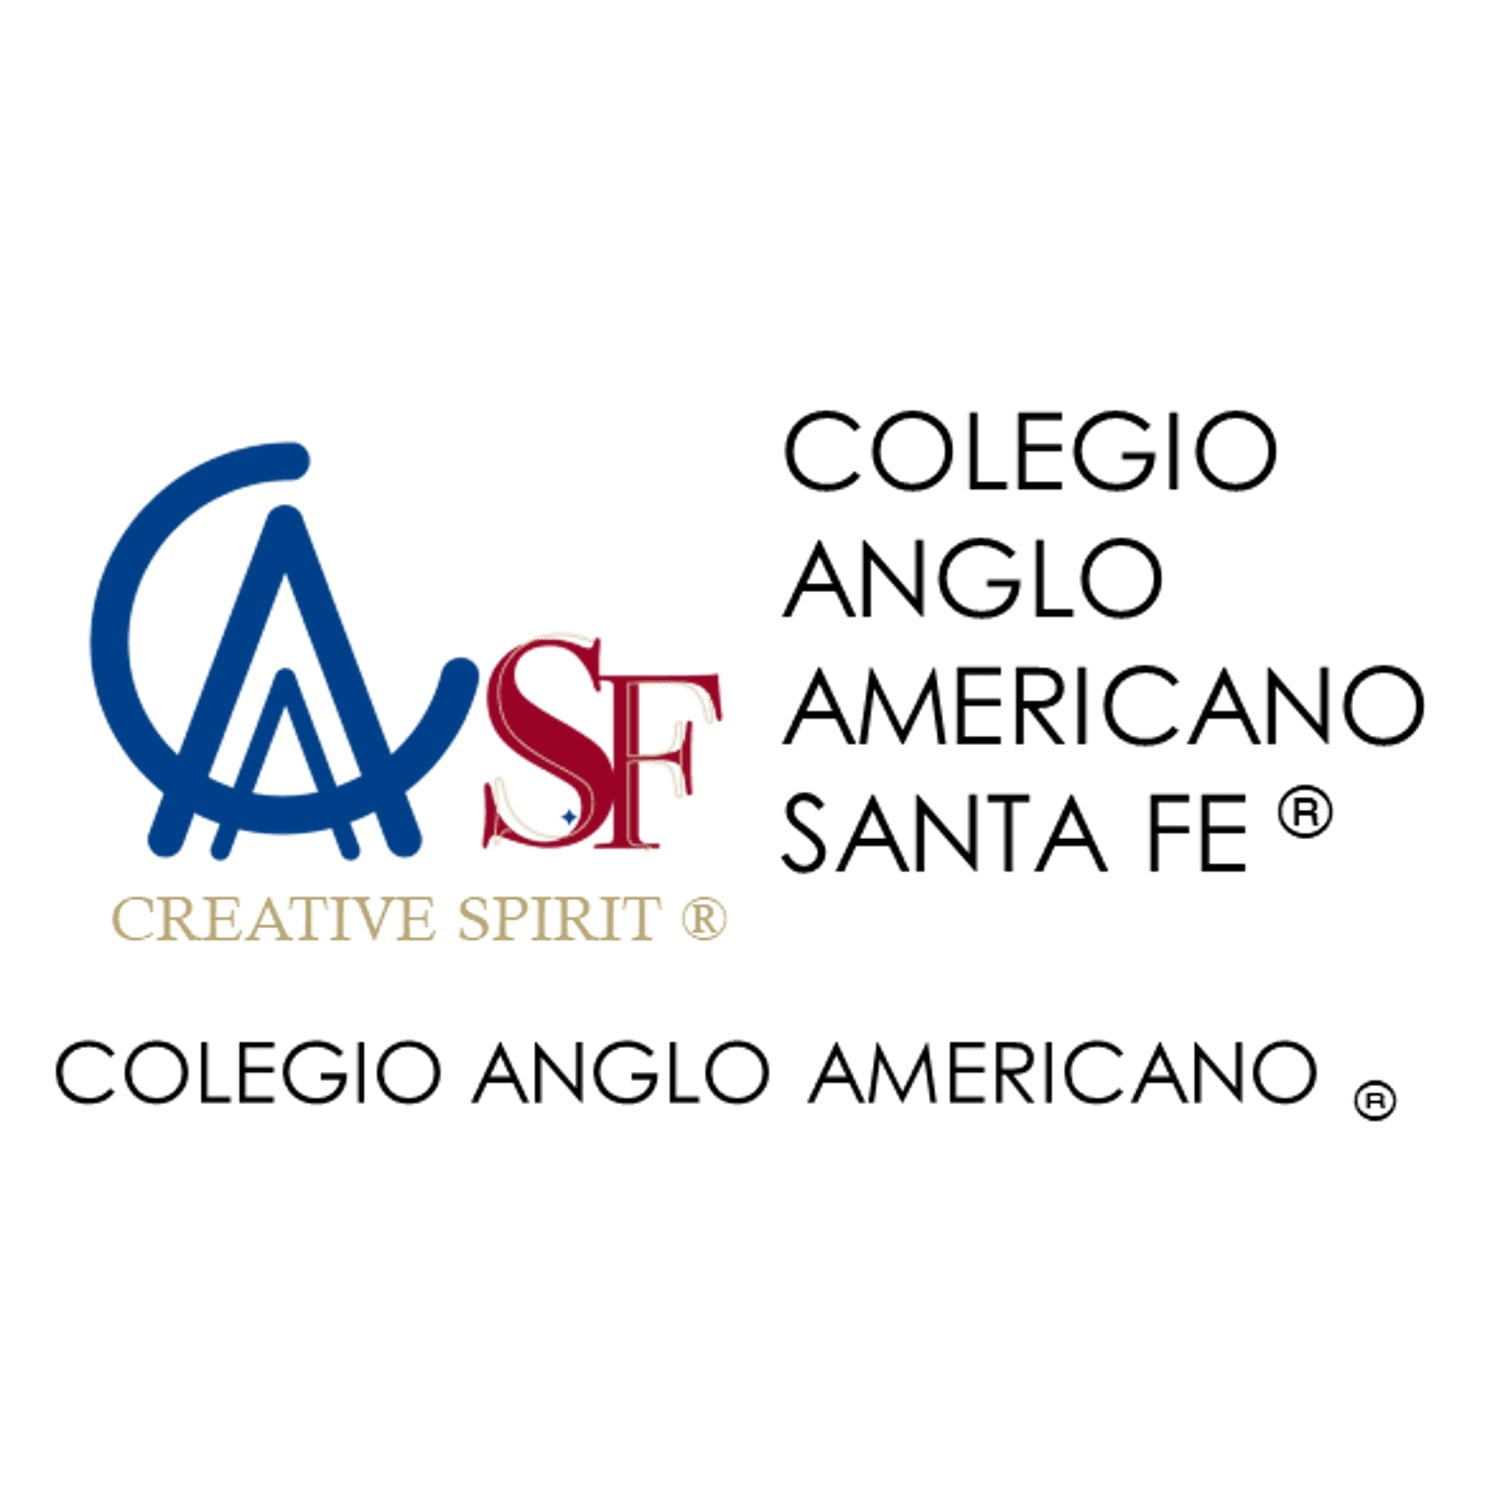 Colegio Anglo Americano Santa Fe